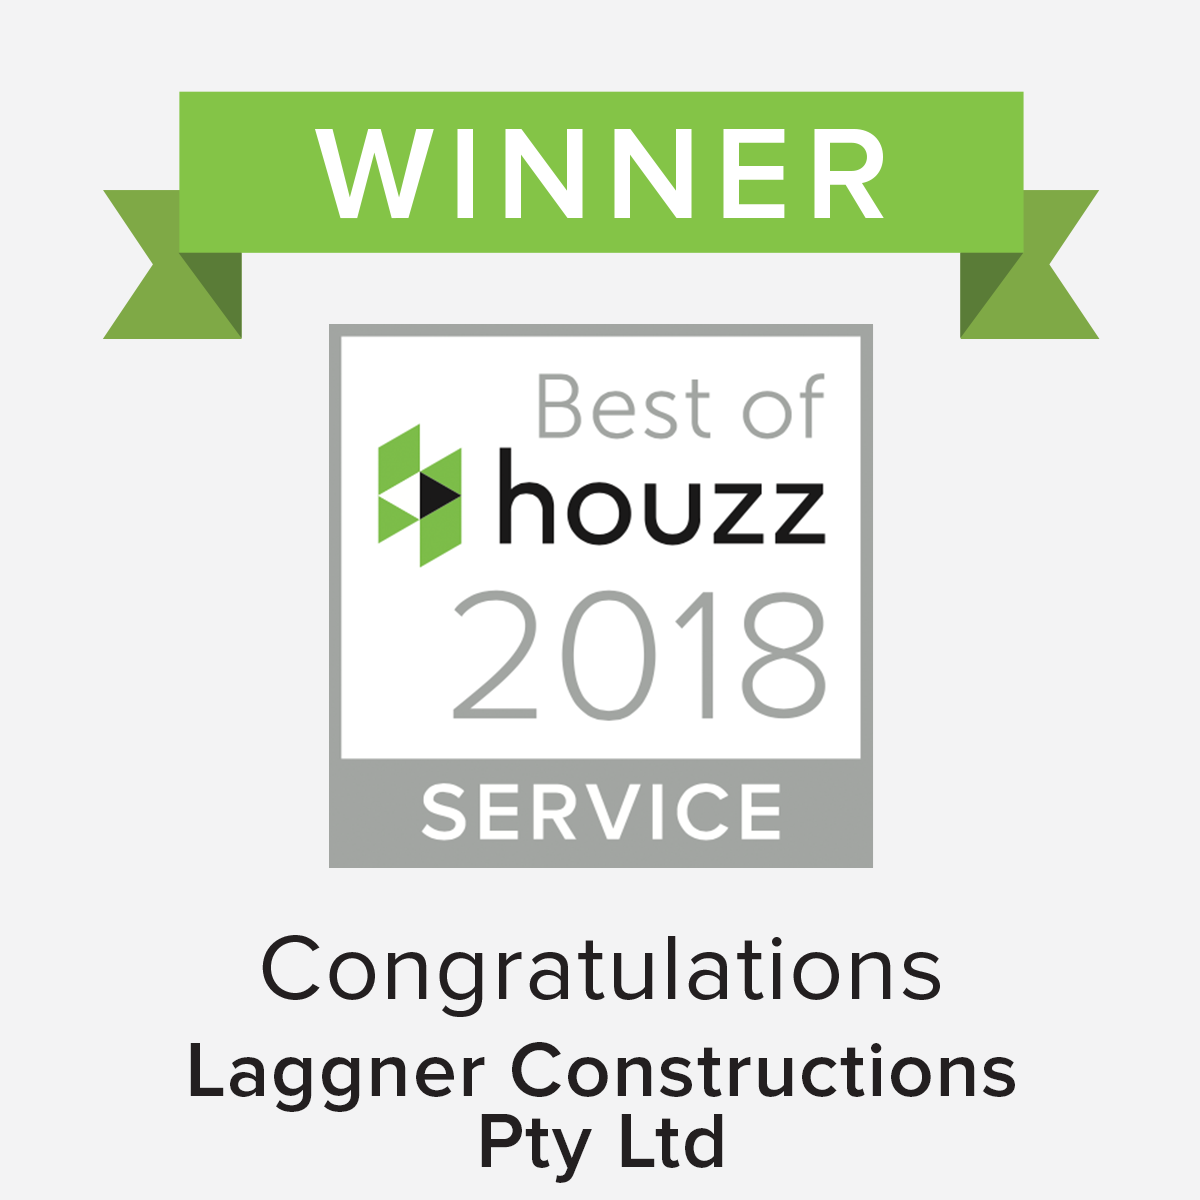 Laggner Constructions – Best of Houzz Award Winner 2018